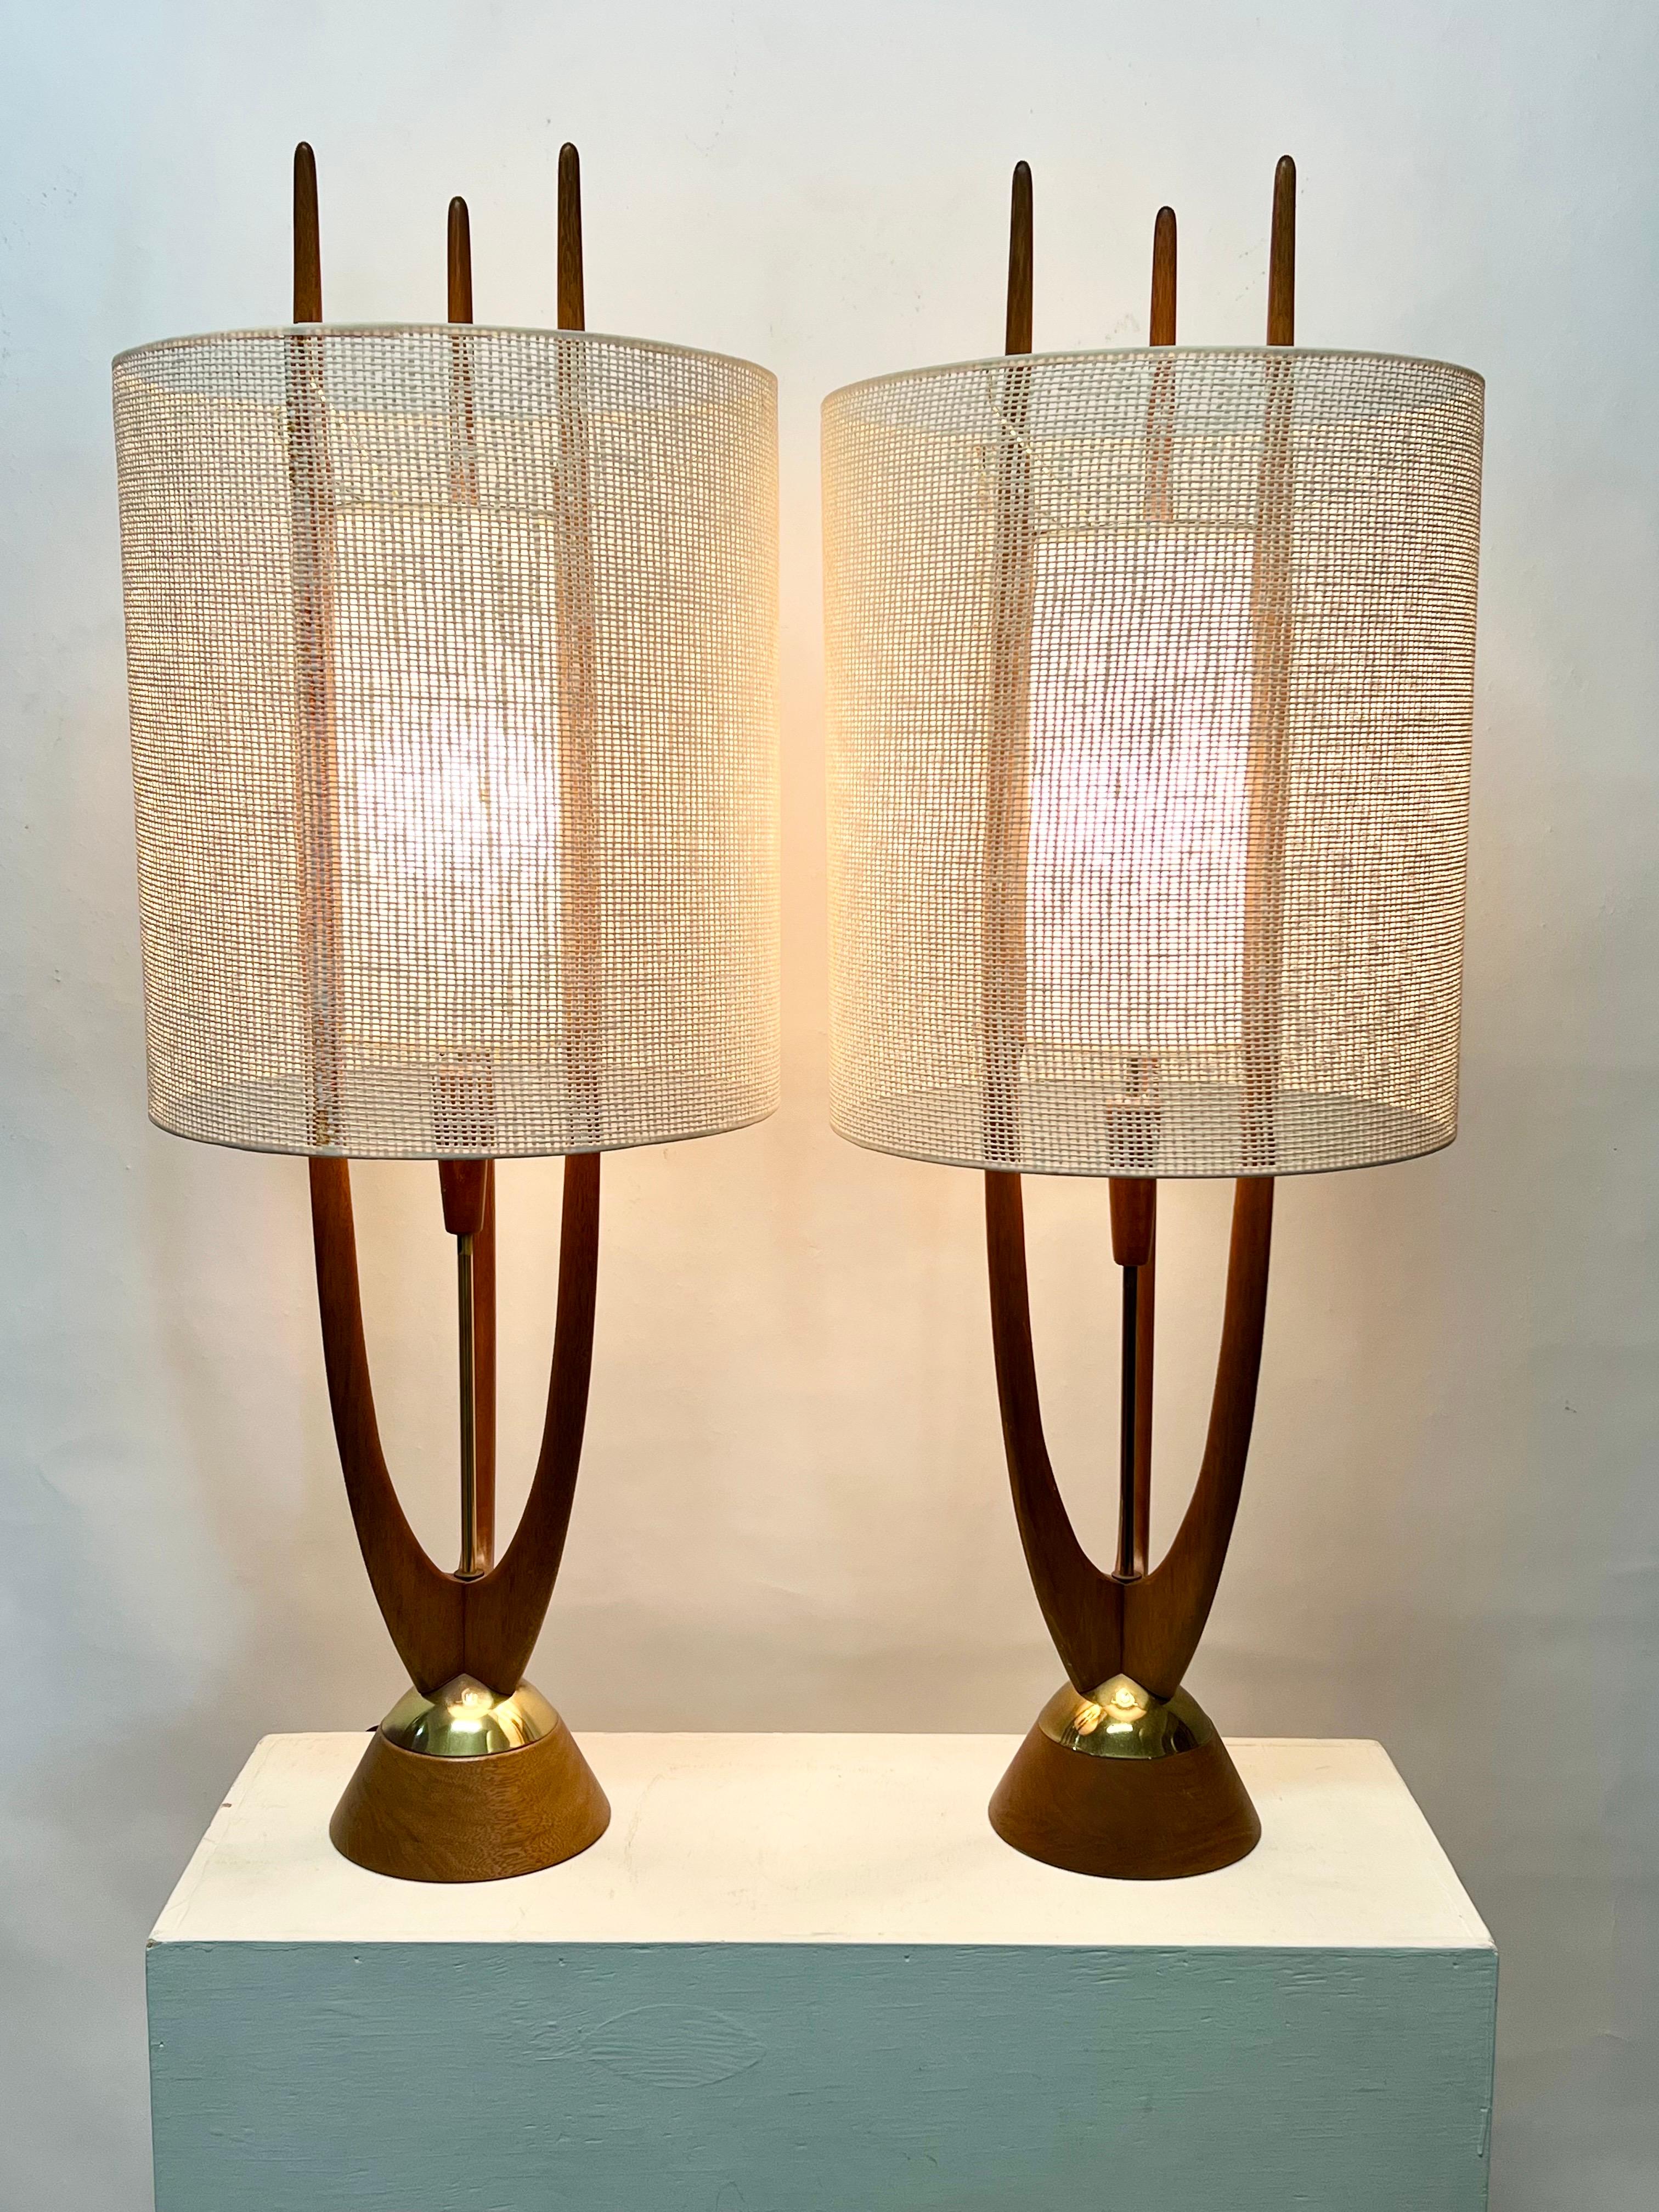 Fantastique paire de lampes de table rares du designer américain John Keal vers les années 1960. Etat d'origine, merveilleuse patine, avec les teintes d'origine. En général, ces lampes n'ont pas d'abat-jour extérieur d'origine. Ils peuvent être